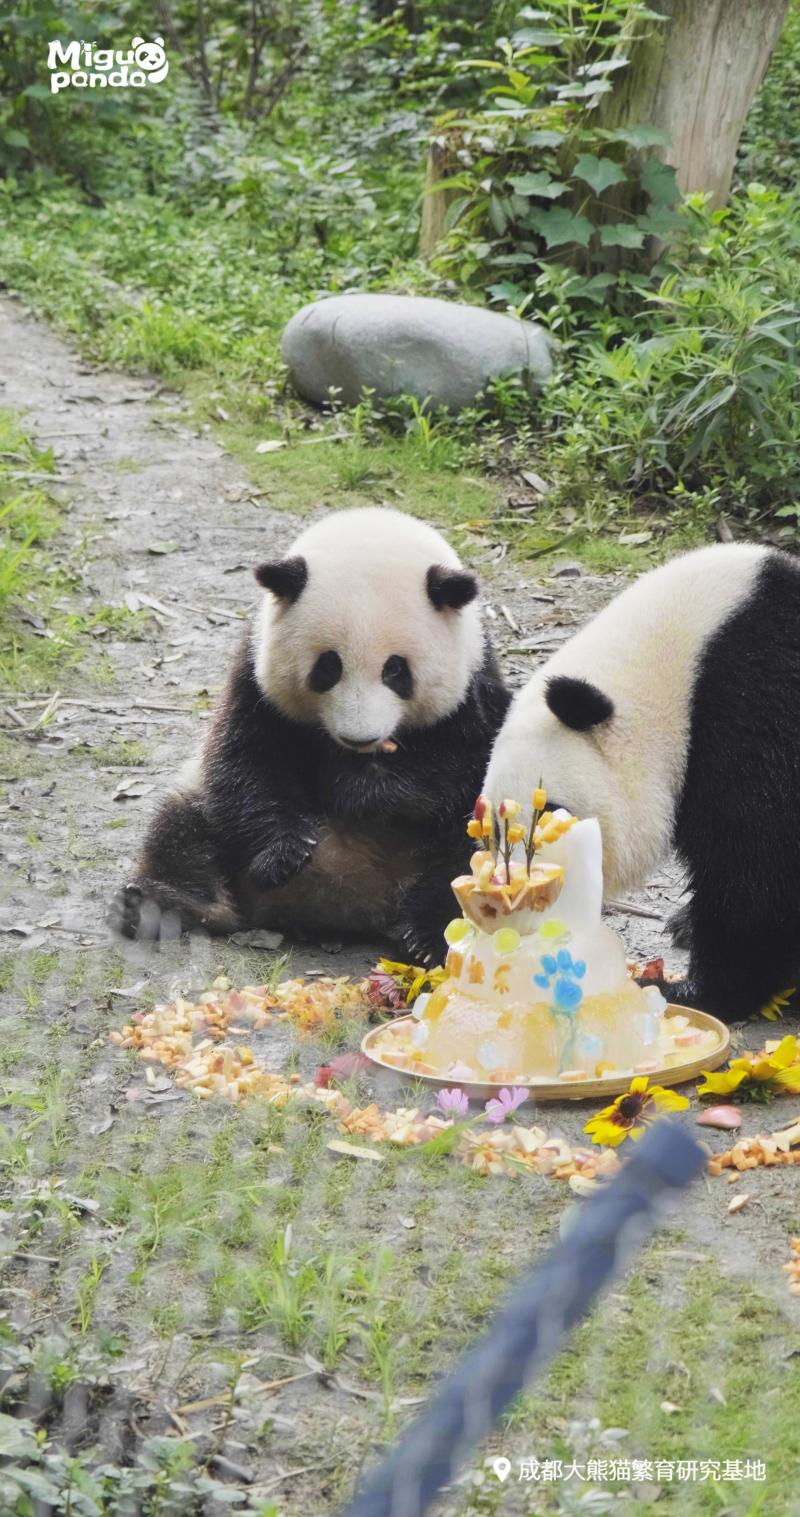 祝三只“小熊友”生日快乐,大熊猫萌兰、花花、和叶同日庆生中国|蛋糕|花花|动物园|北京|萌兰|生日|大熊猫